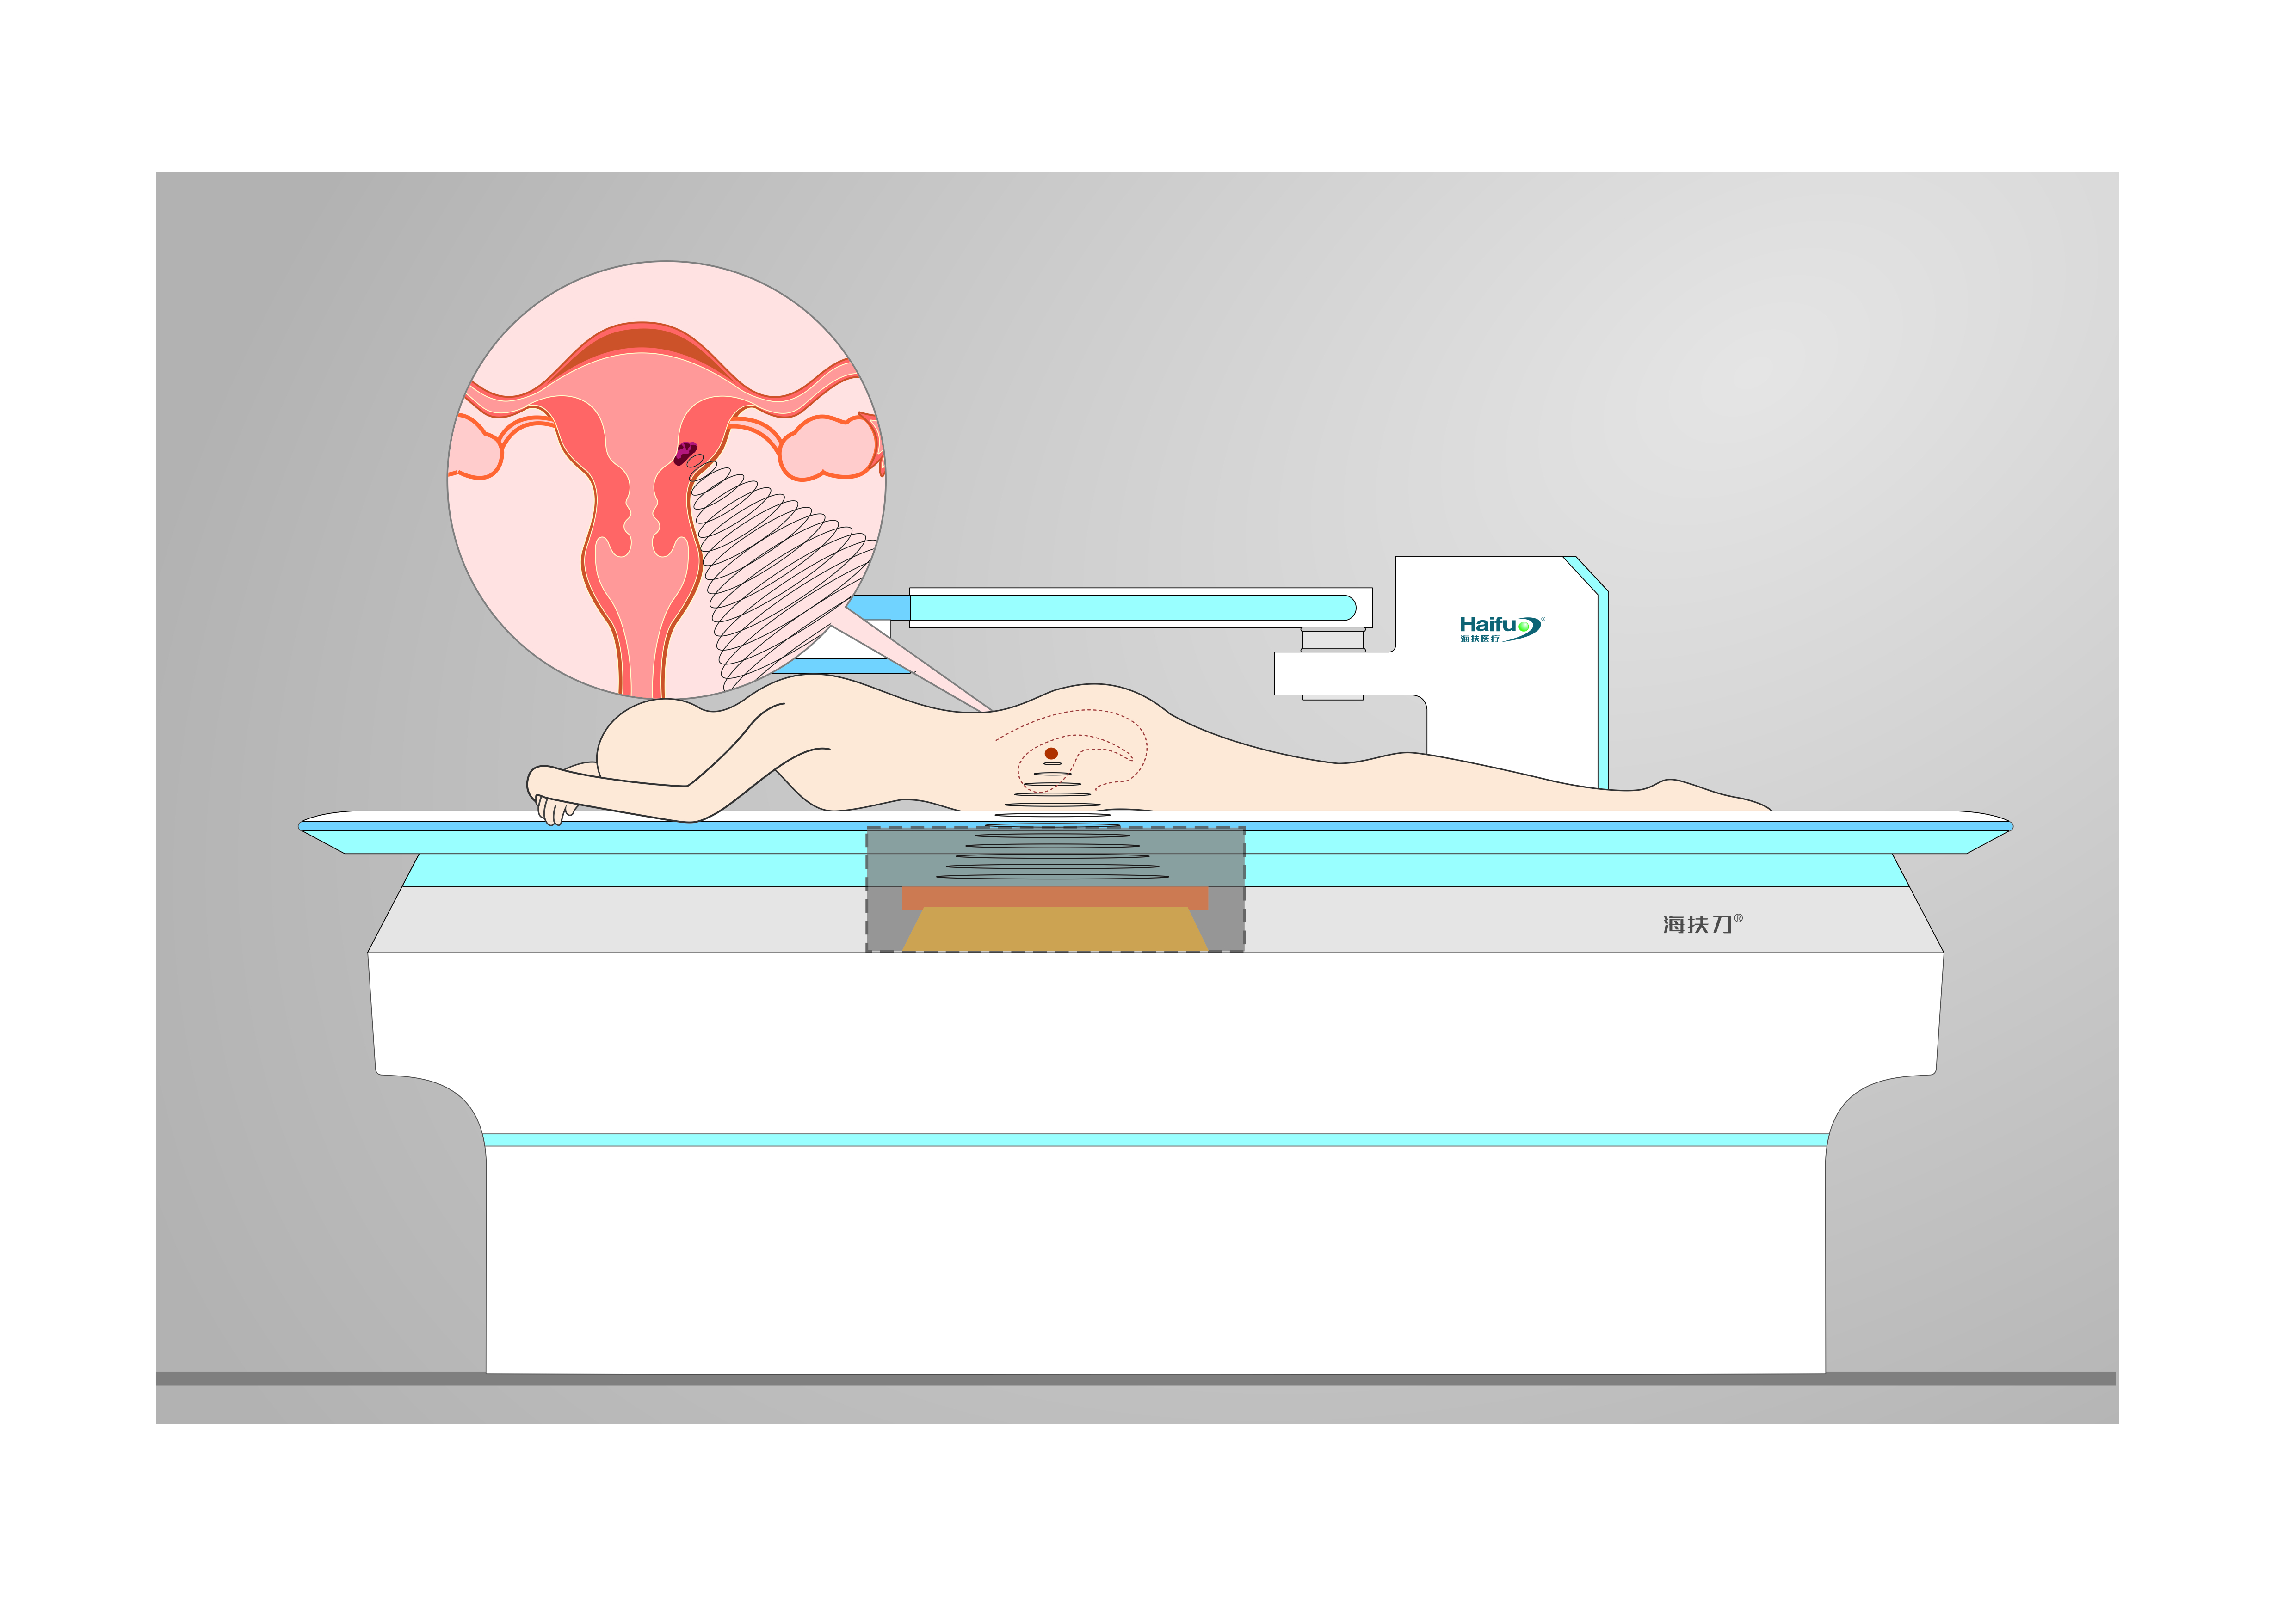 聚焦超声如何治疗子宫肌瘤？一文给你讲的明明白白